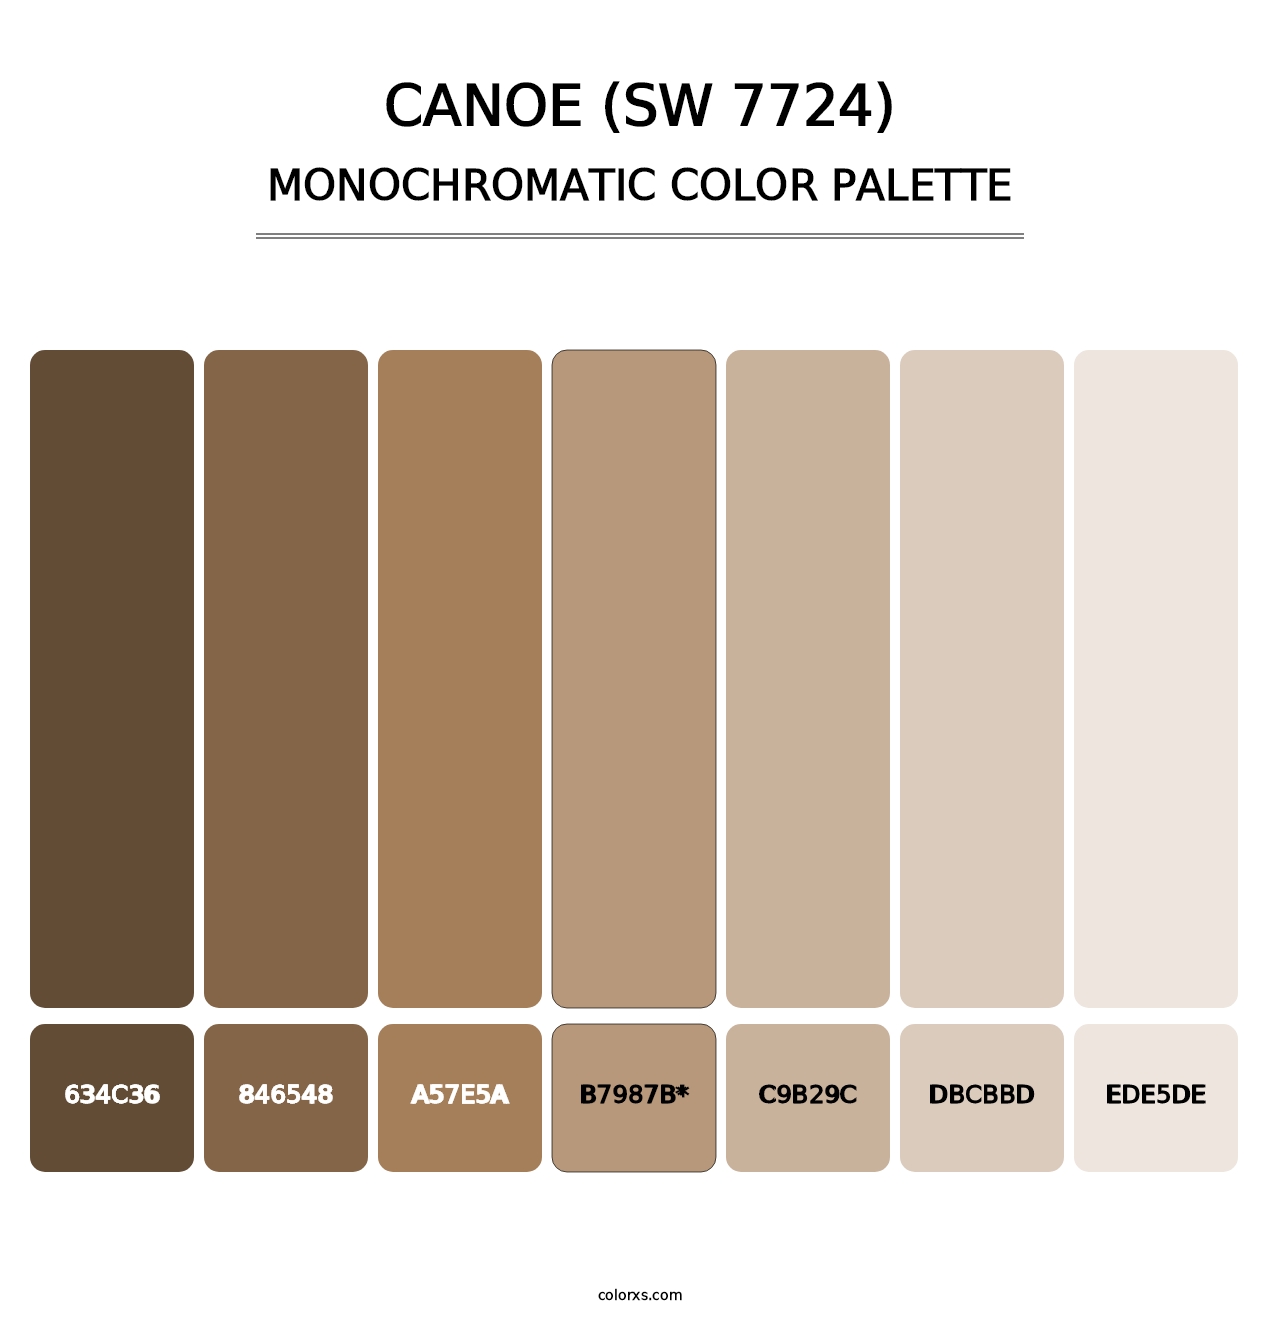 Canoe (SW 7724) - Monochromatic Color Palette